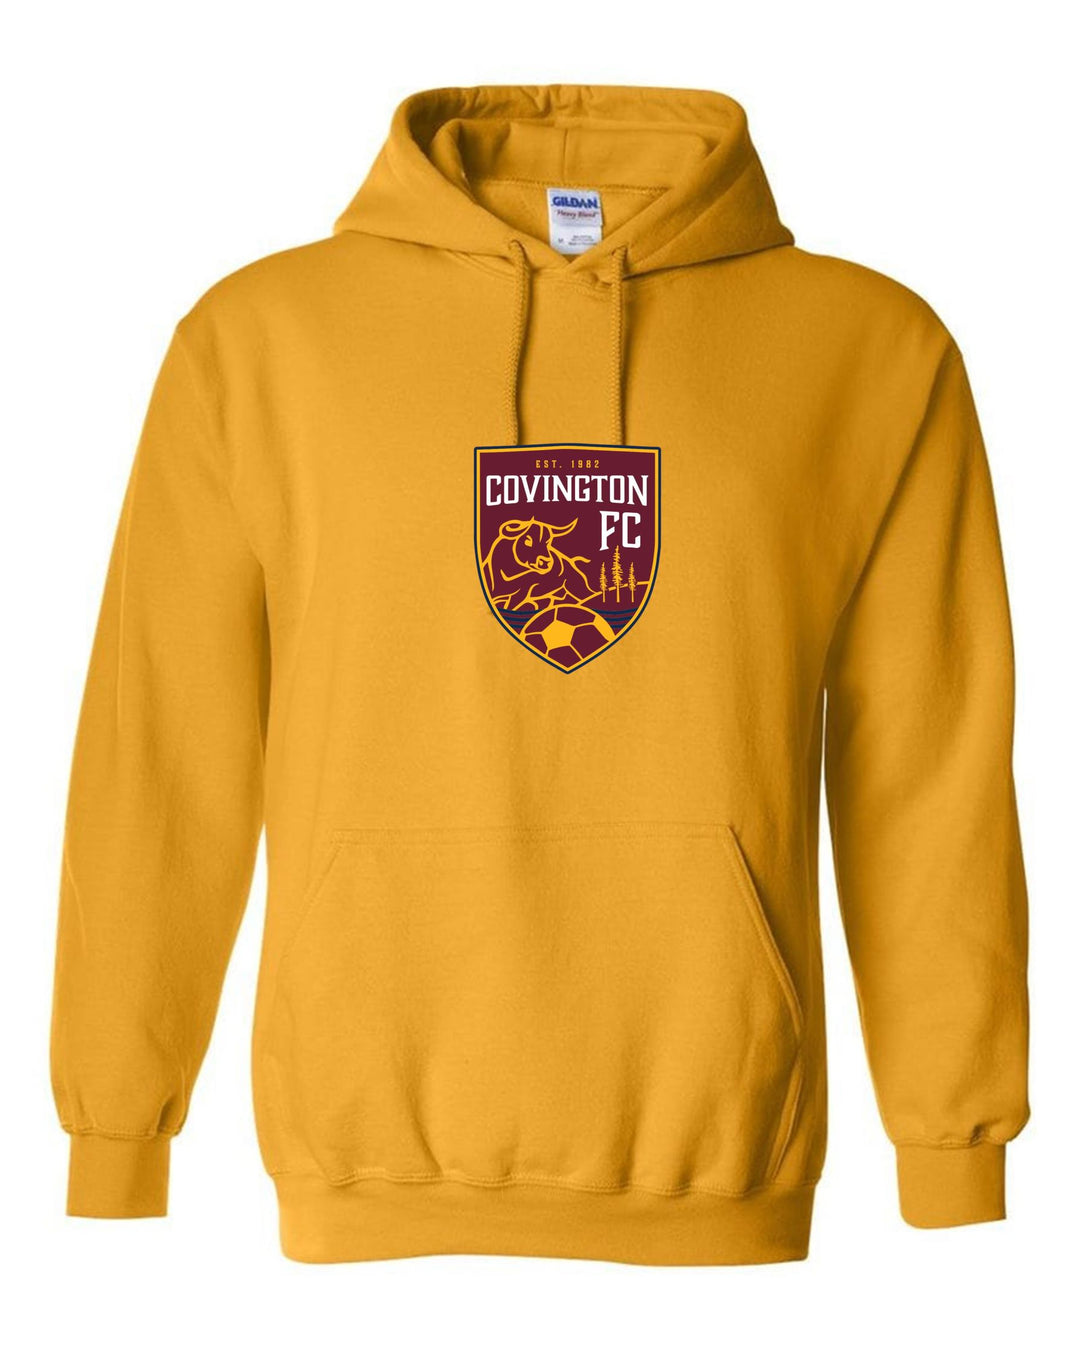 CYSA Hooded Sweatshirt - Navy, Gold or Grey CYSA Spiritwear NAVY MENS 2XL - Third Coast Soccer